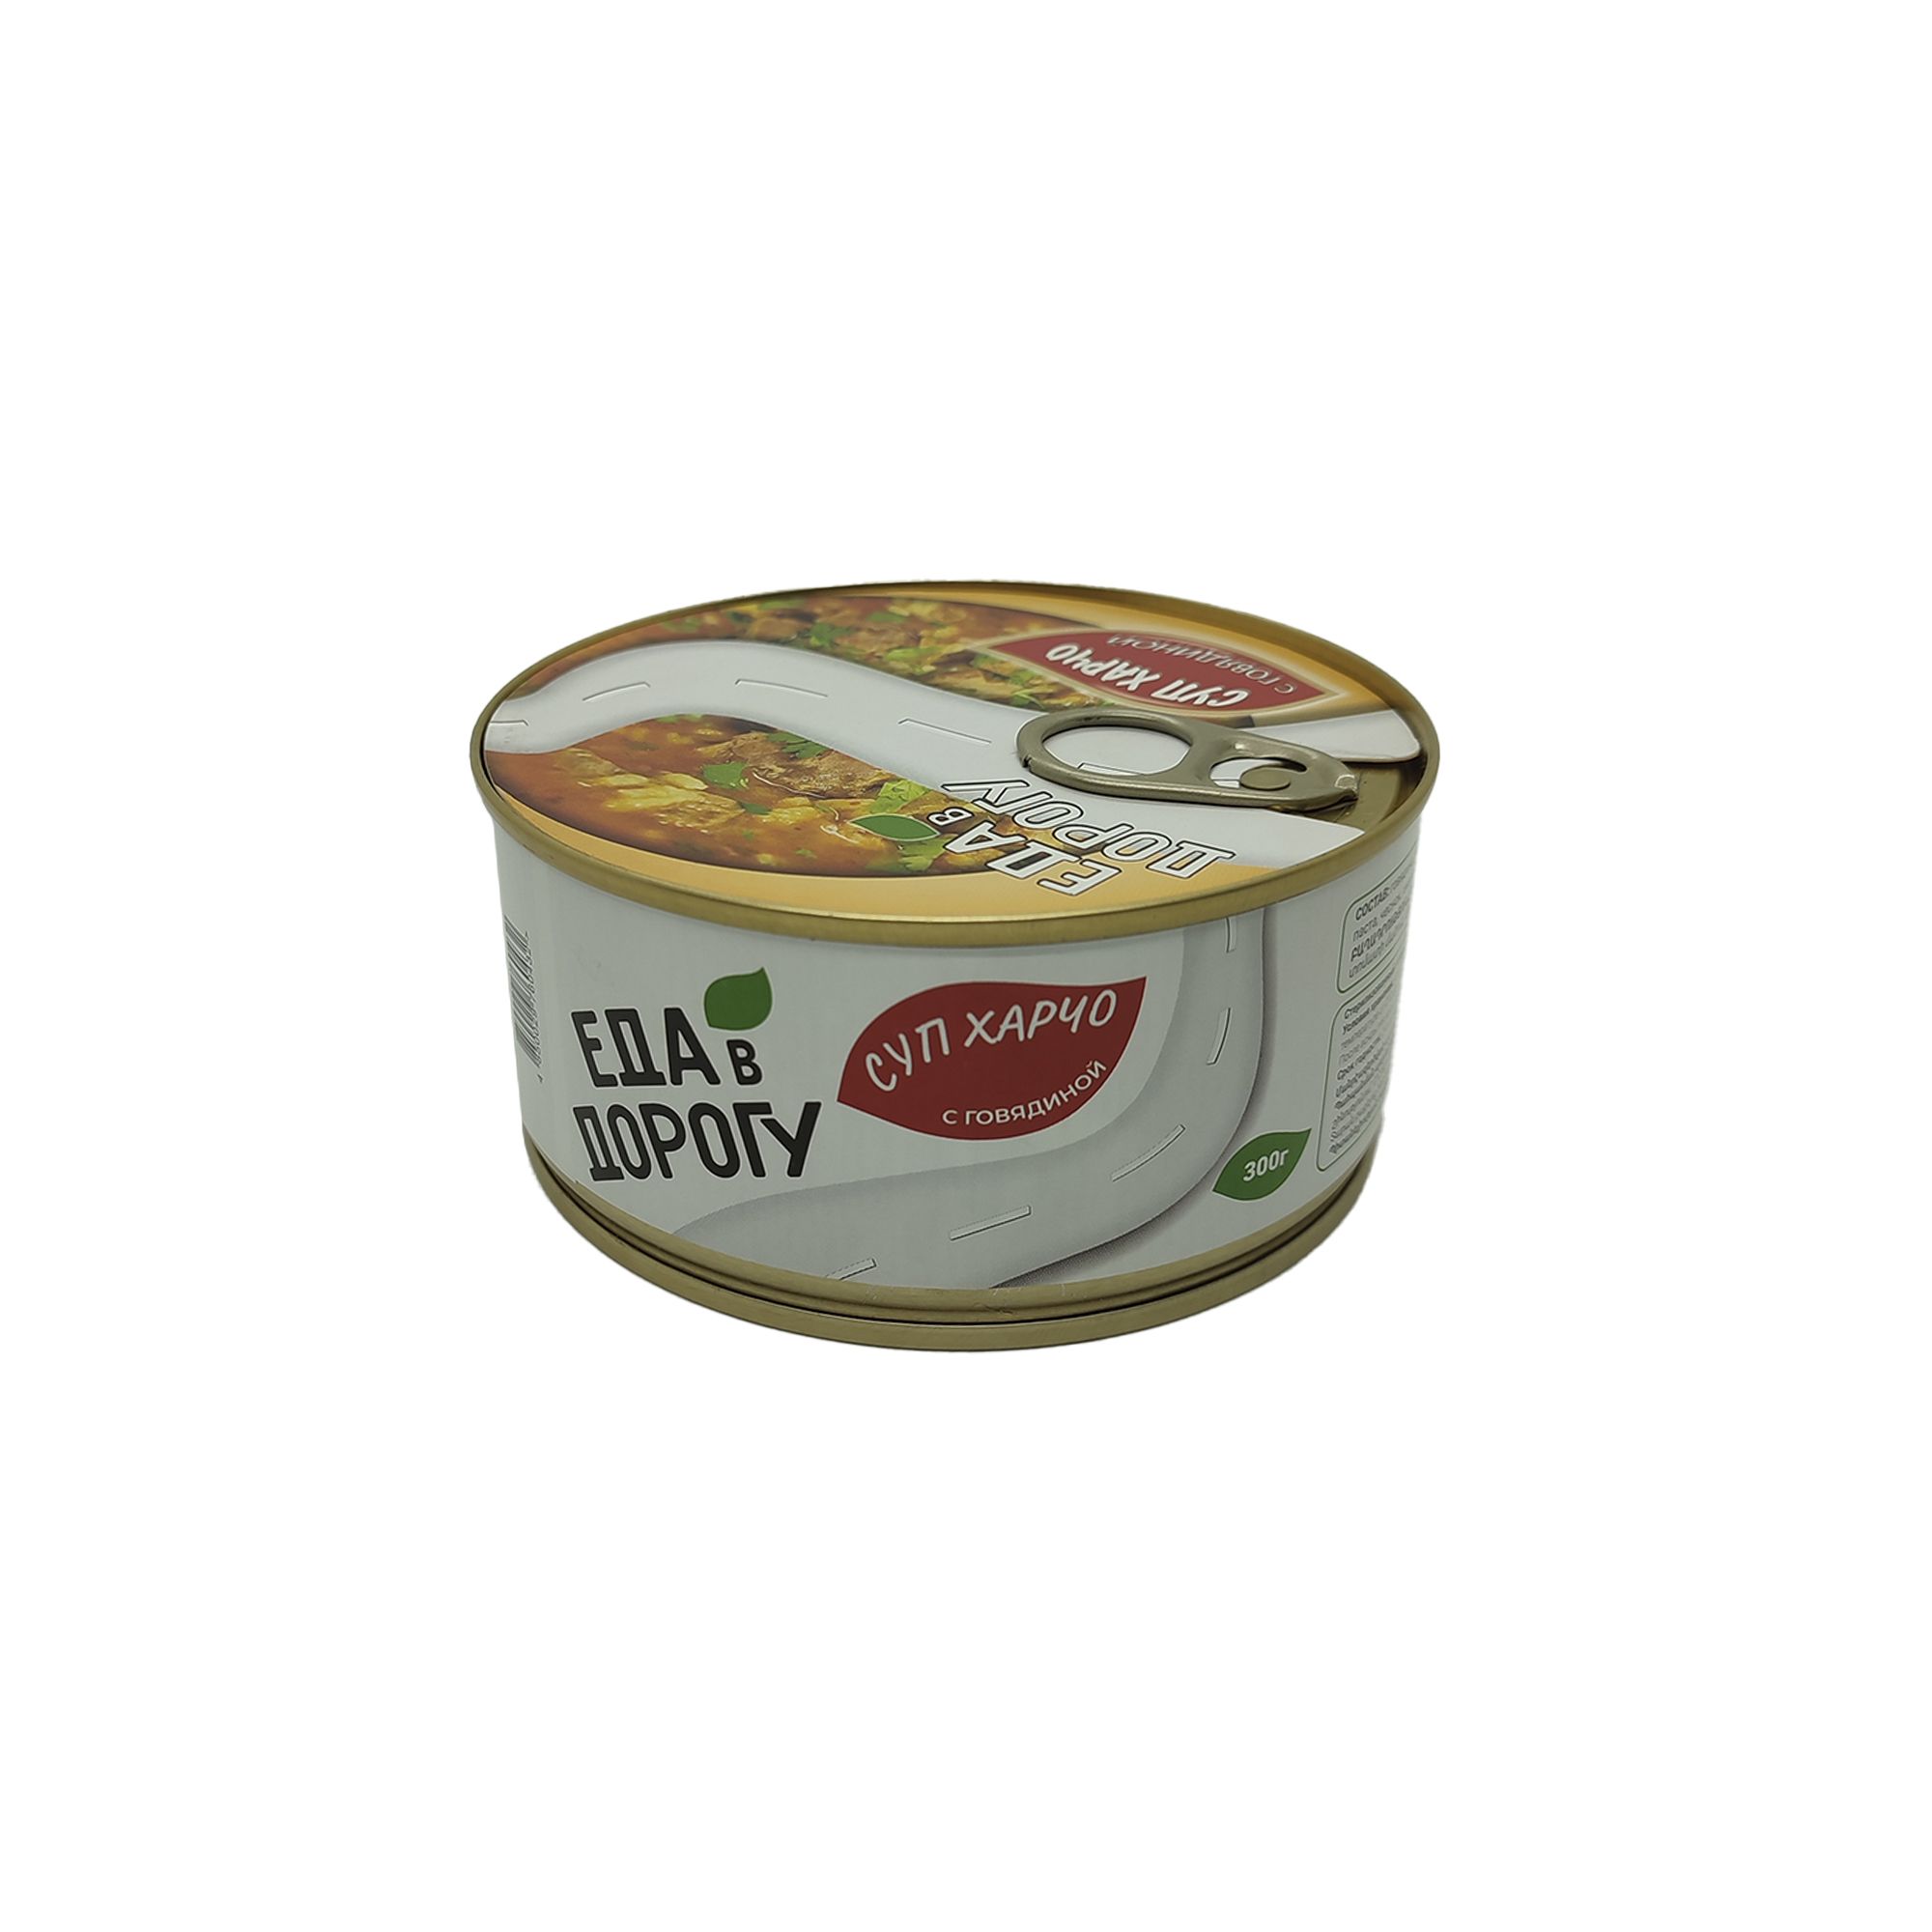 Суп харчо с говядиной "Еда в дорогу" 300гр. с доставкой по России и в Казахстан | Bready